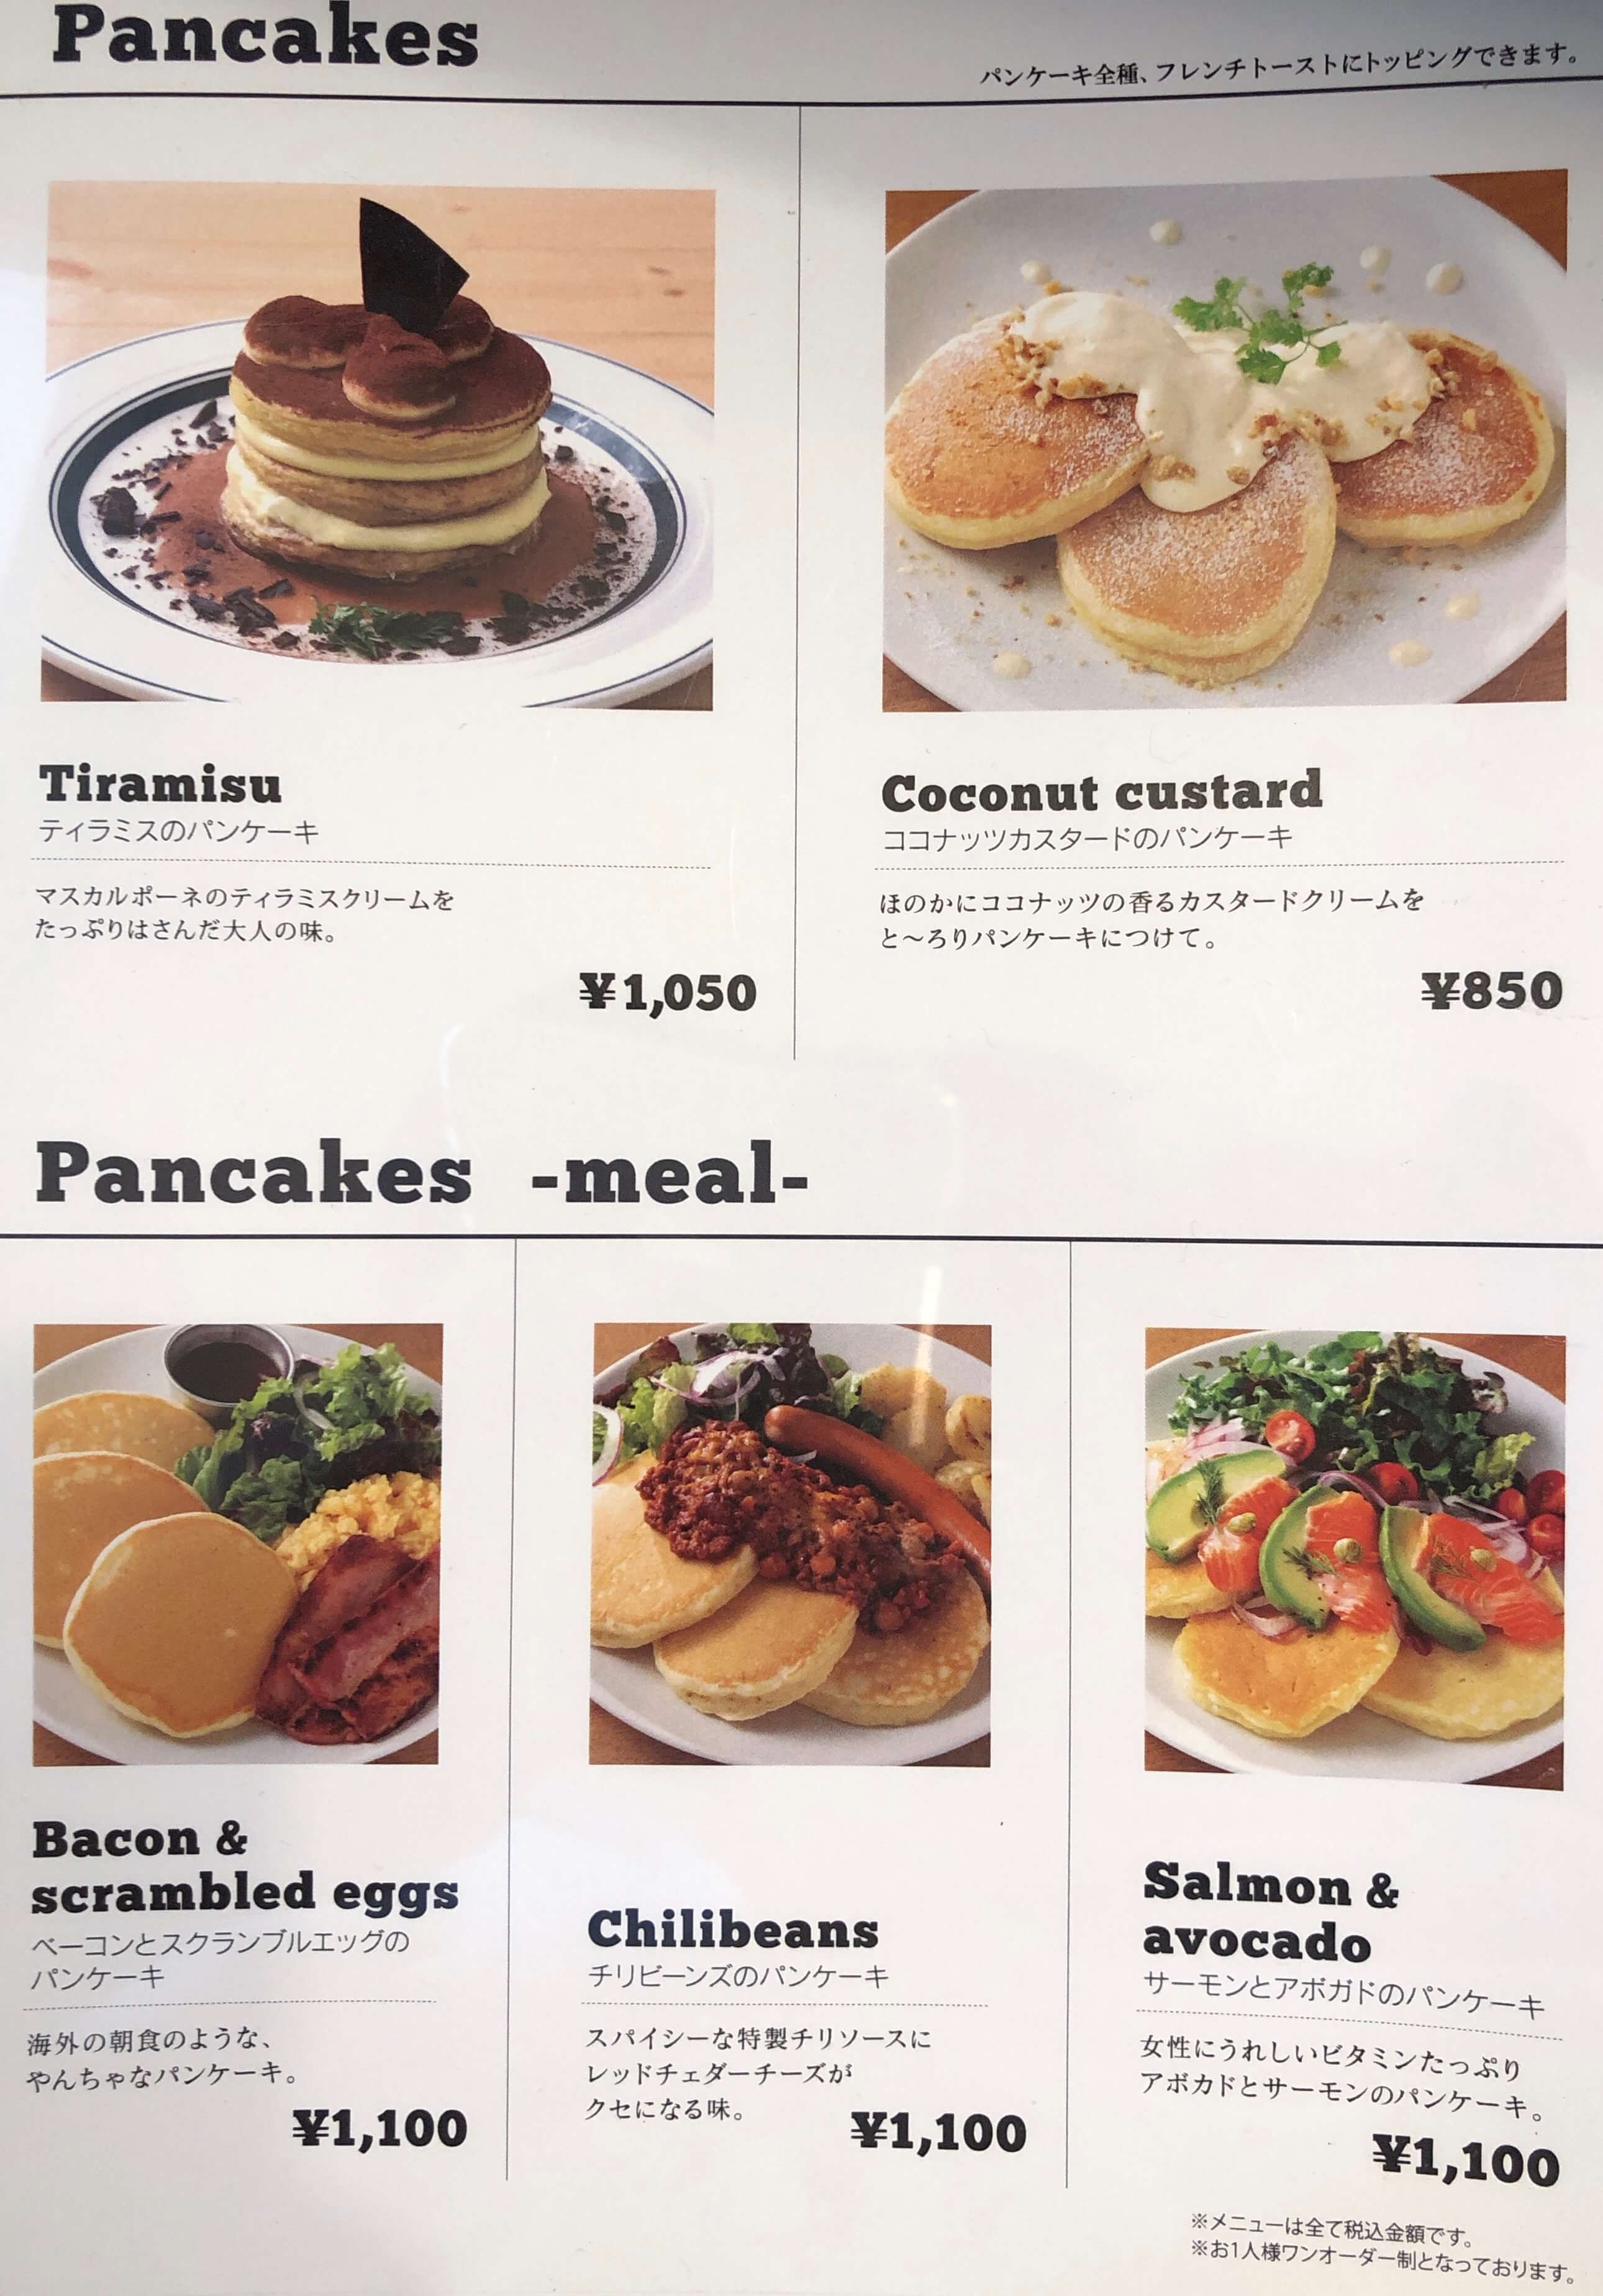 Gramグラム 高岡市 パンケーキ カフェ 本当にふるしゅわ食感 富山のランチ お出かけ 遊びのおすすめ情報 ココなび